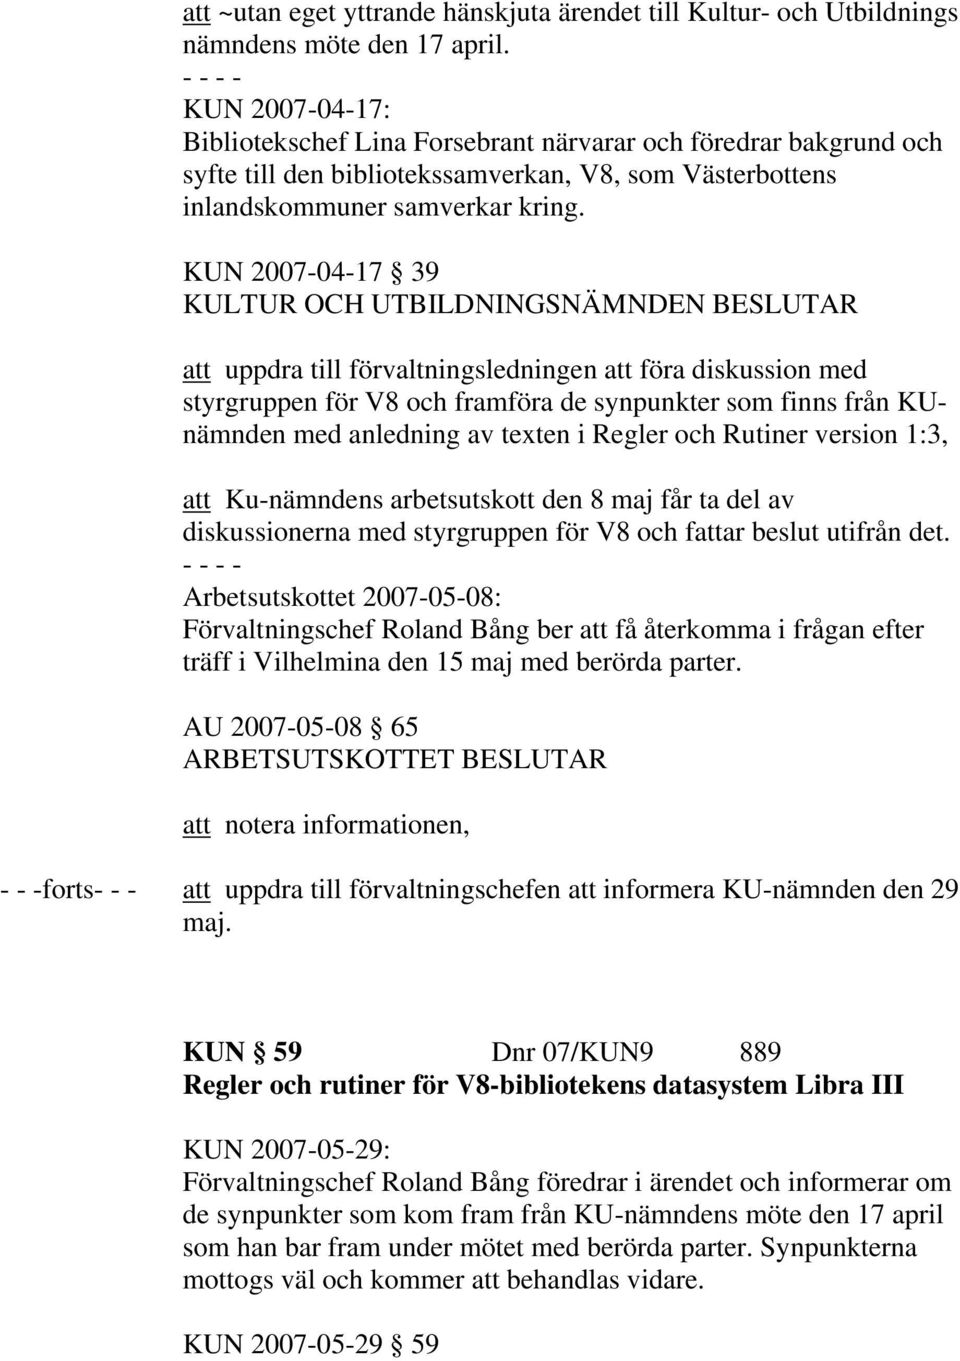 KUN 2007-04-17 39 att uppdra till förvaltningsledningen att föra diskussion med styrgruppen för V8 och framföra de synpunkter som finns från KUnämnden med anledning av texten i Regler och Rutiner